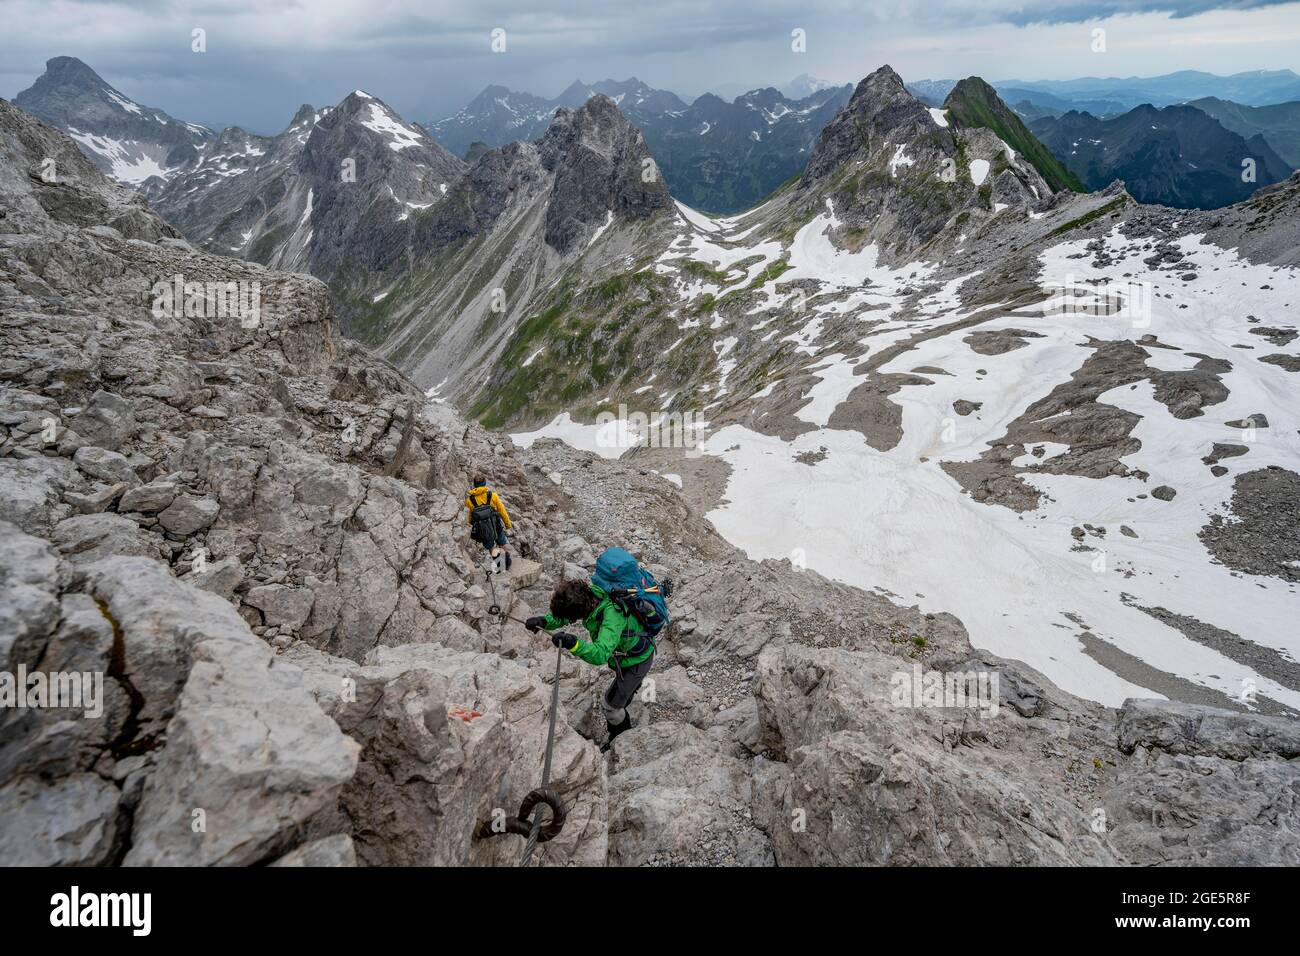 Wanderer und Wanderer bergab felsiges Gelände, Pfad mit Stahlseil gesichert, im Hintergrund Bergpanorama mit alten Schneefeldern und felsigen Berg Stockfoto